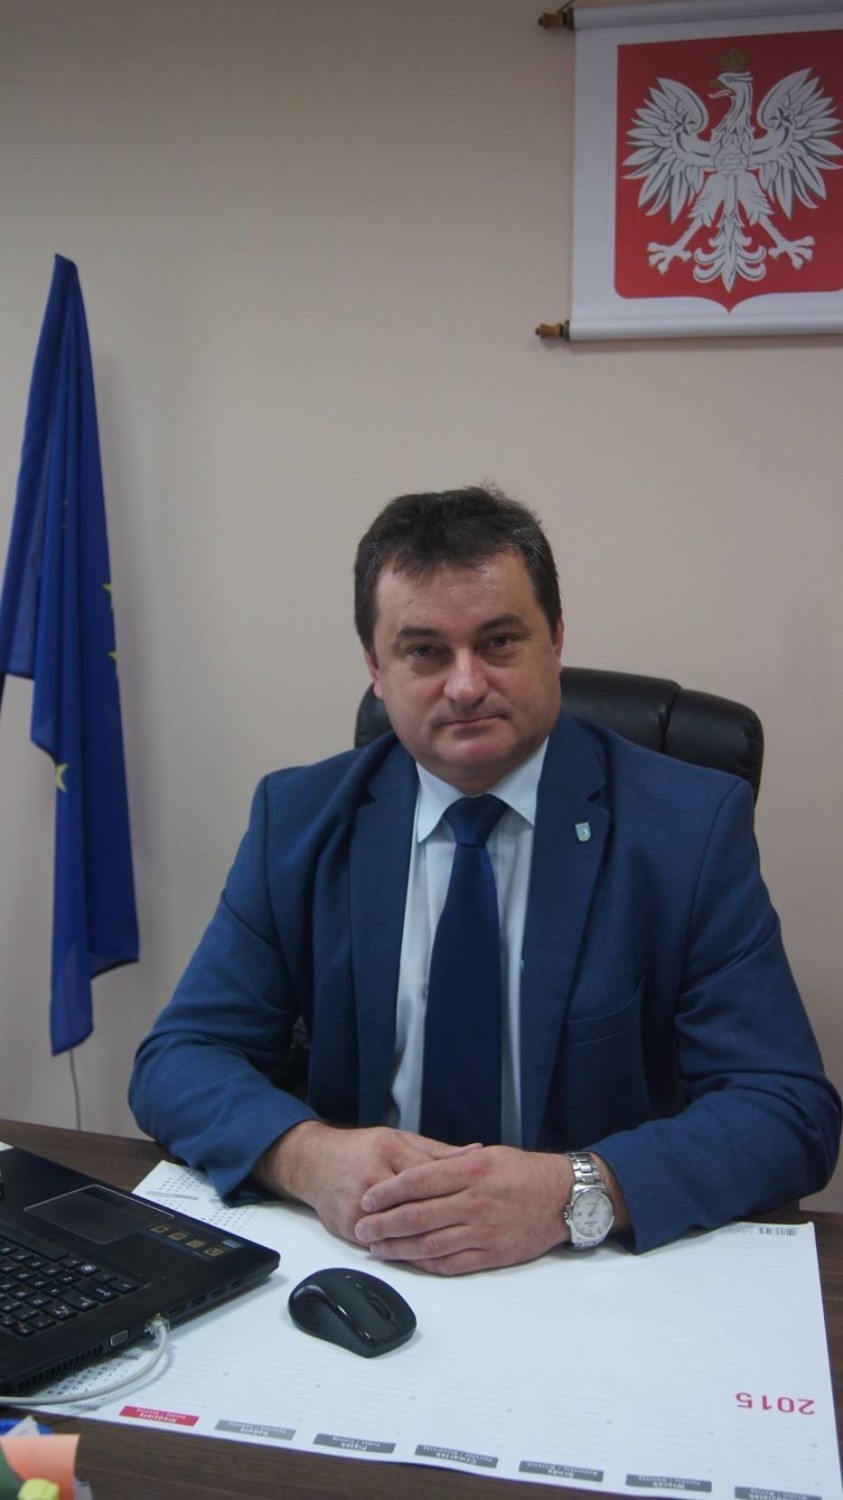 Sekretarz gminy Konopnica musi odejść, bo nie spełnia oczekiwań wójta [FOTO]